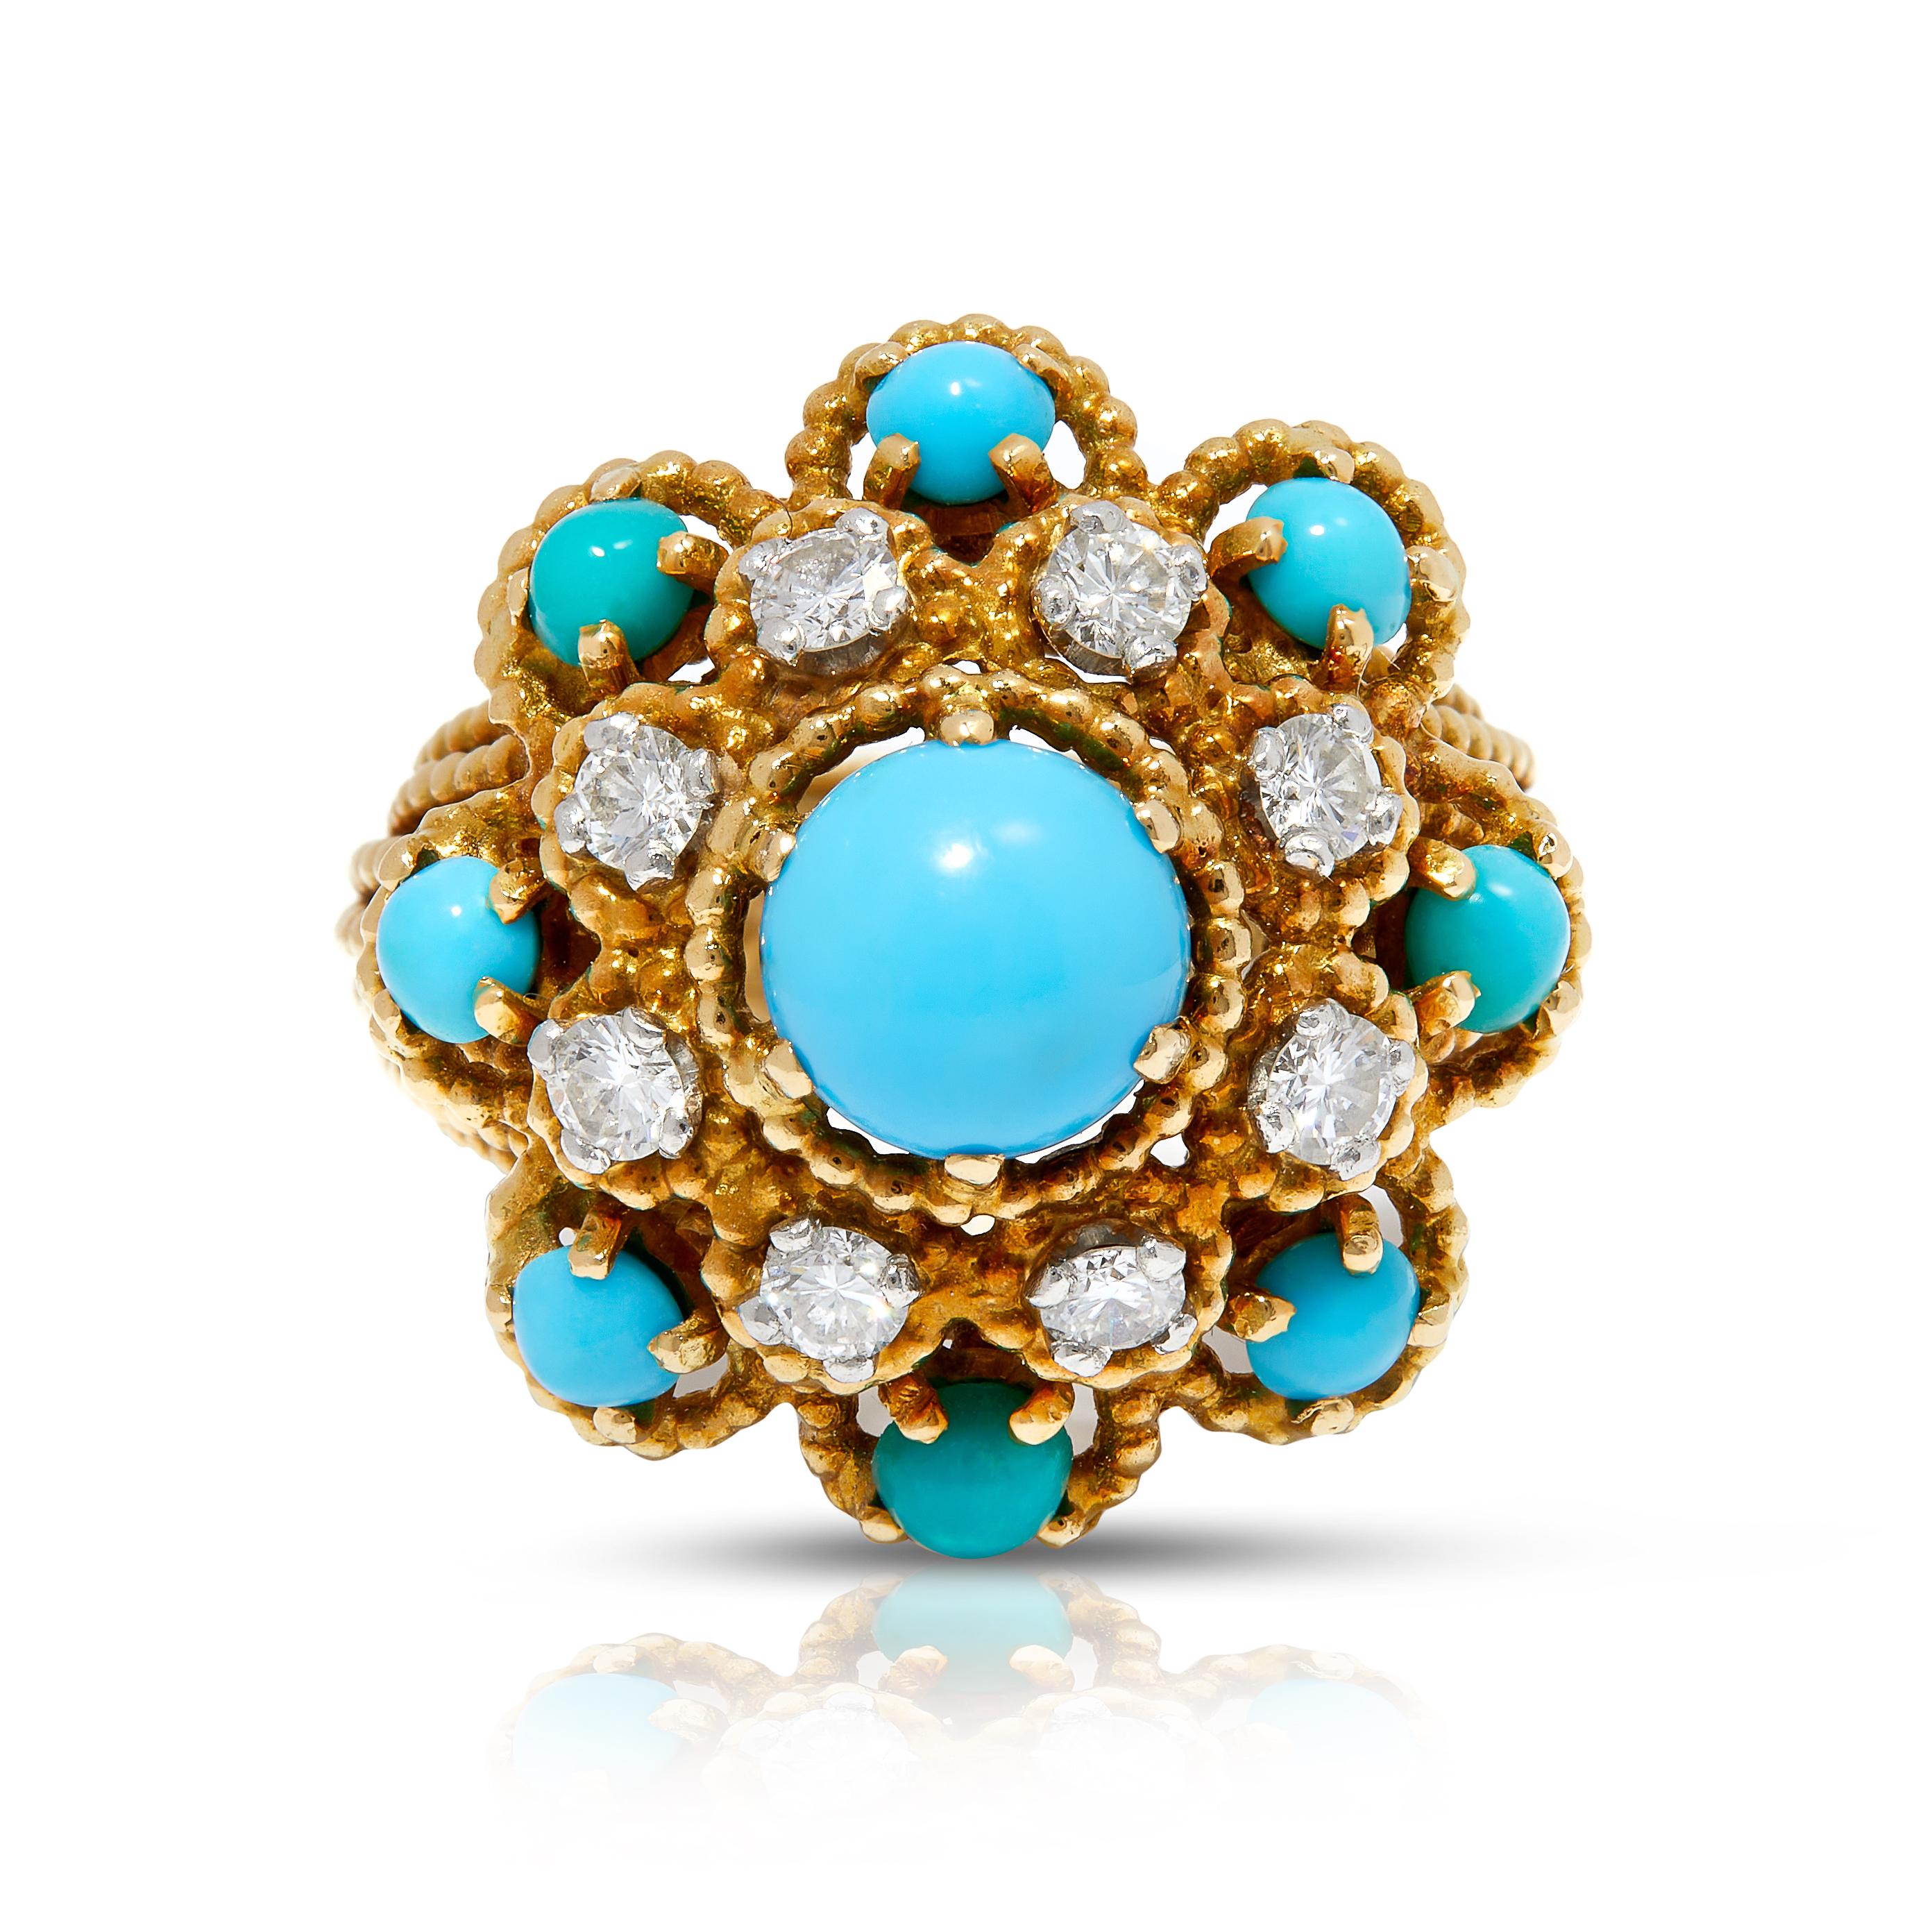 Taille brillant Vintage 1970s Gold Bombé Dress Ring with Turquoise and Diamonds (bague de robe en or bombé avec turquoise et diamants) en vente